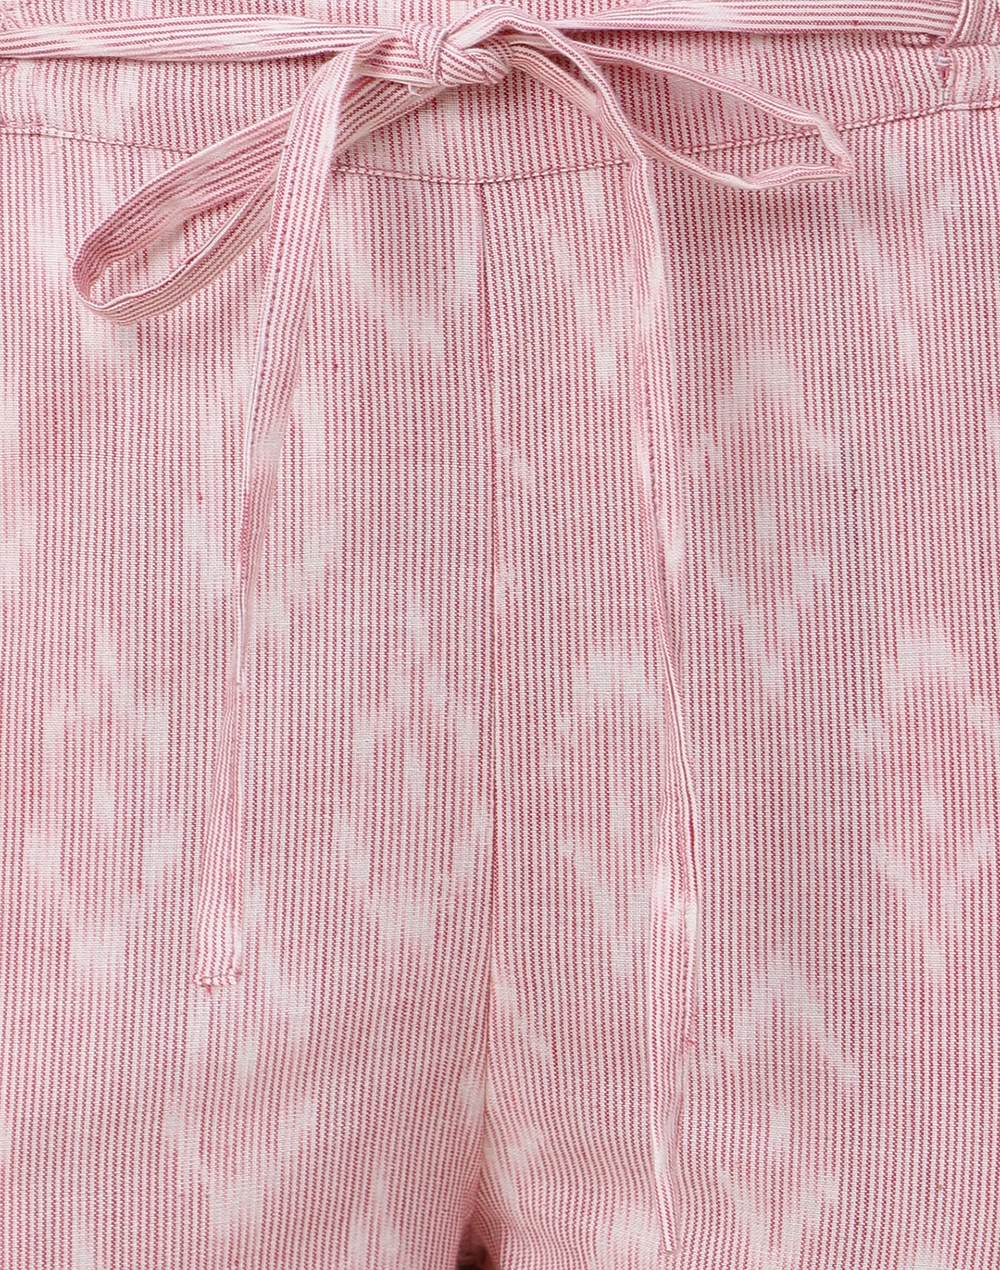 Pink Cotton Ikat Printed Set